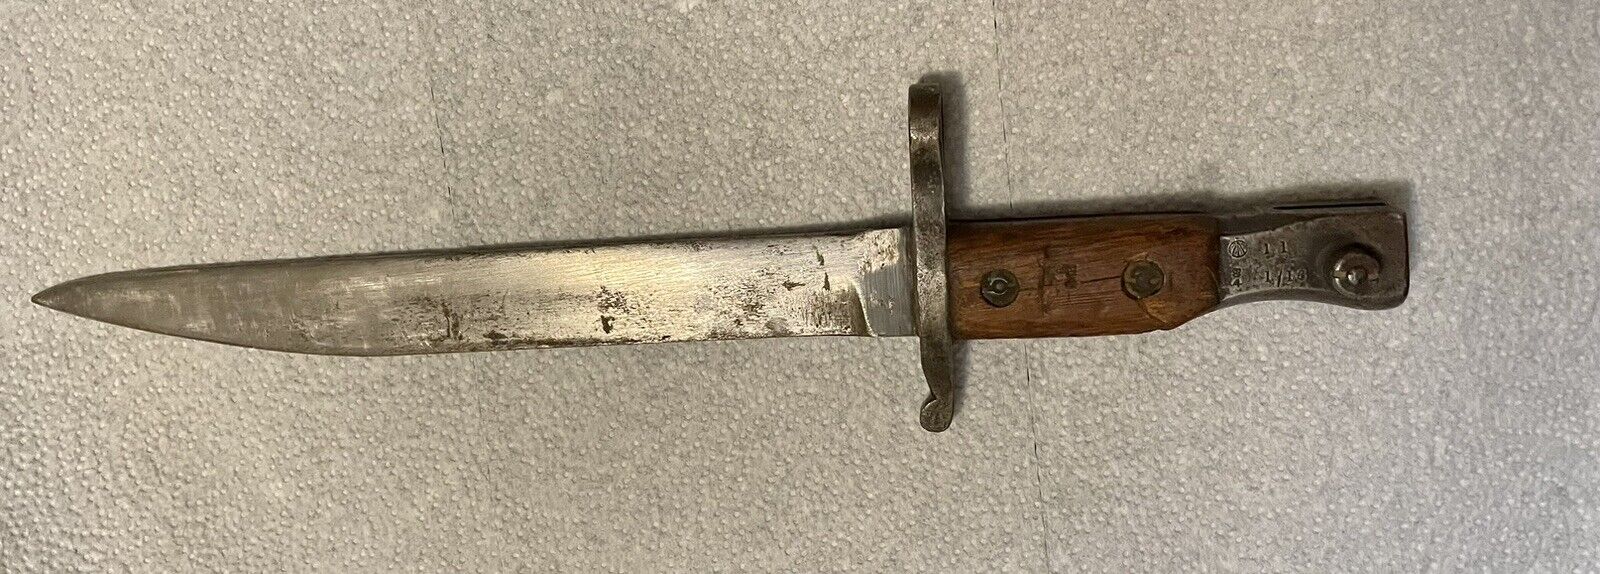 Ross Model 1907 WWI era Bayonet. Canadian Markings. Length 14.5\